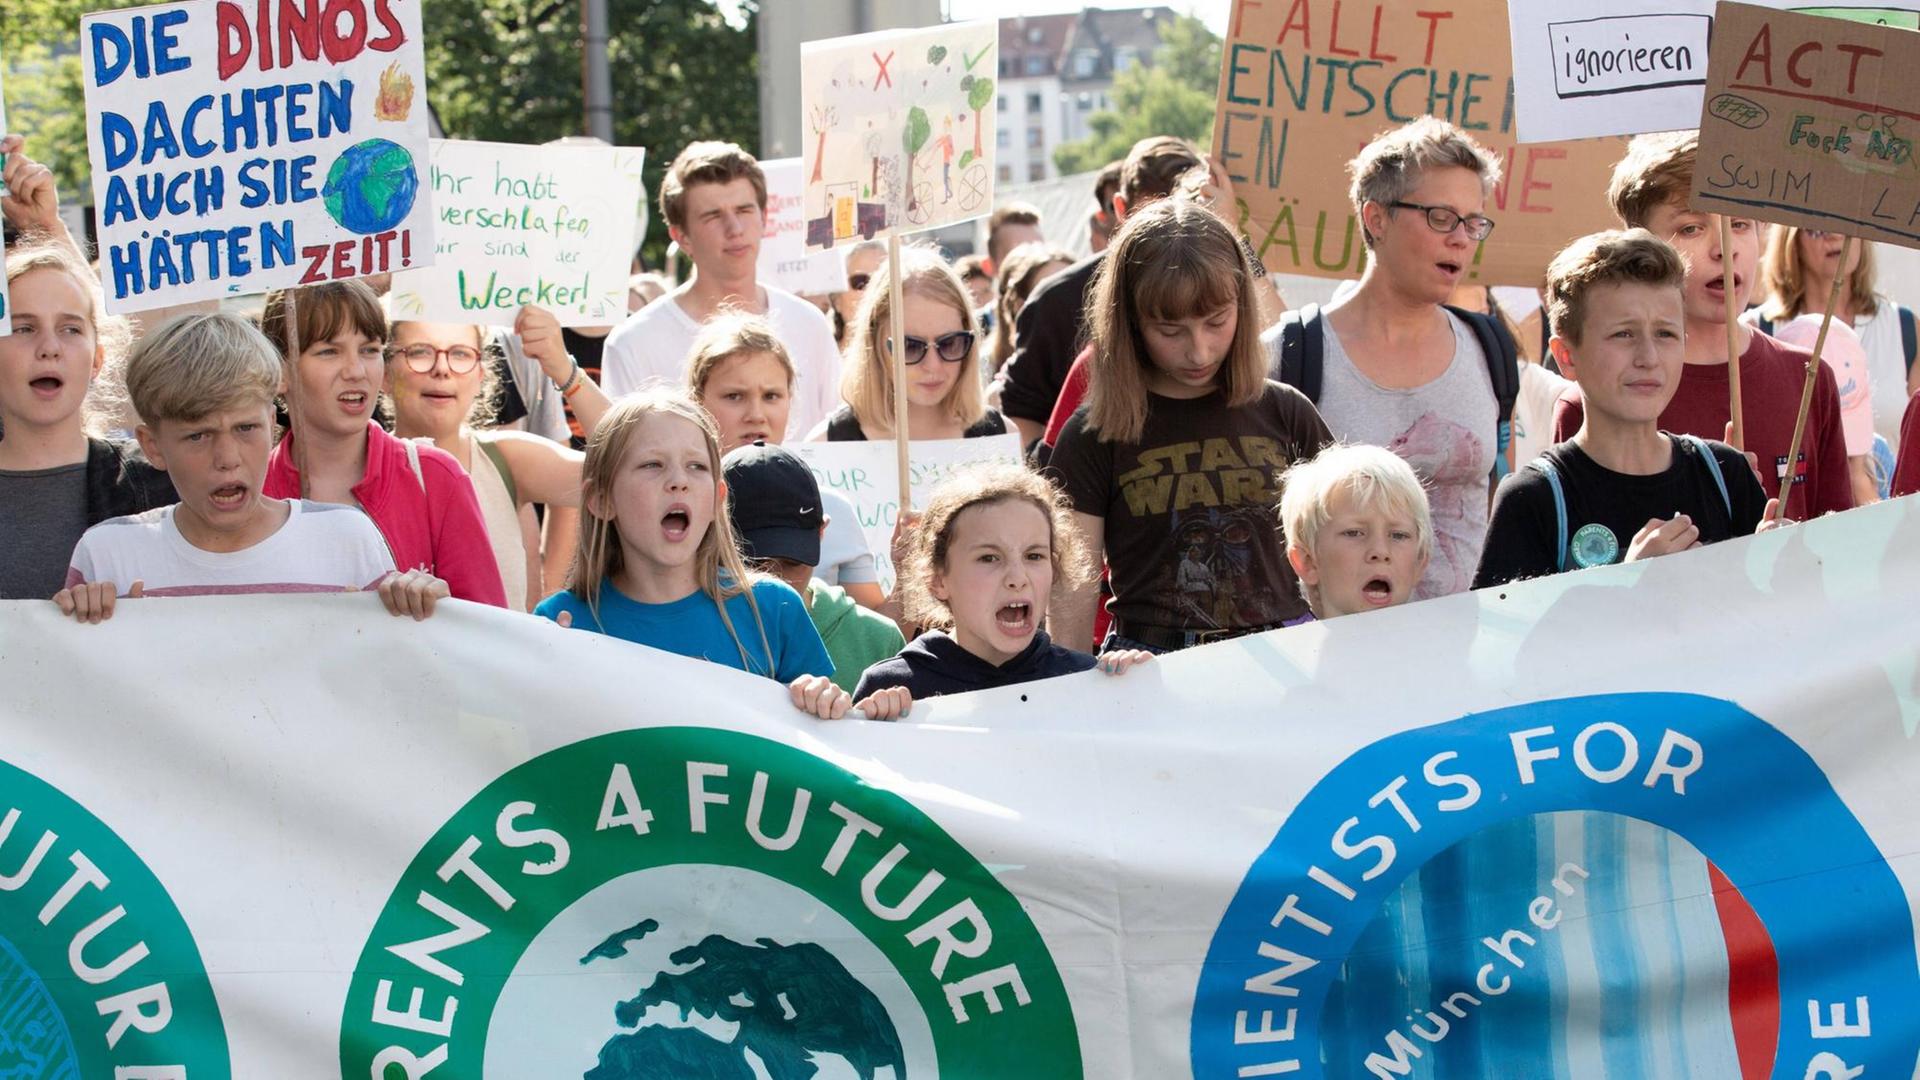 Menchen tragen auf einer Demo ein großes Transparent. Darauf steht "Parents 4 future" und "Scientists 4 future".